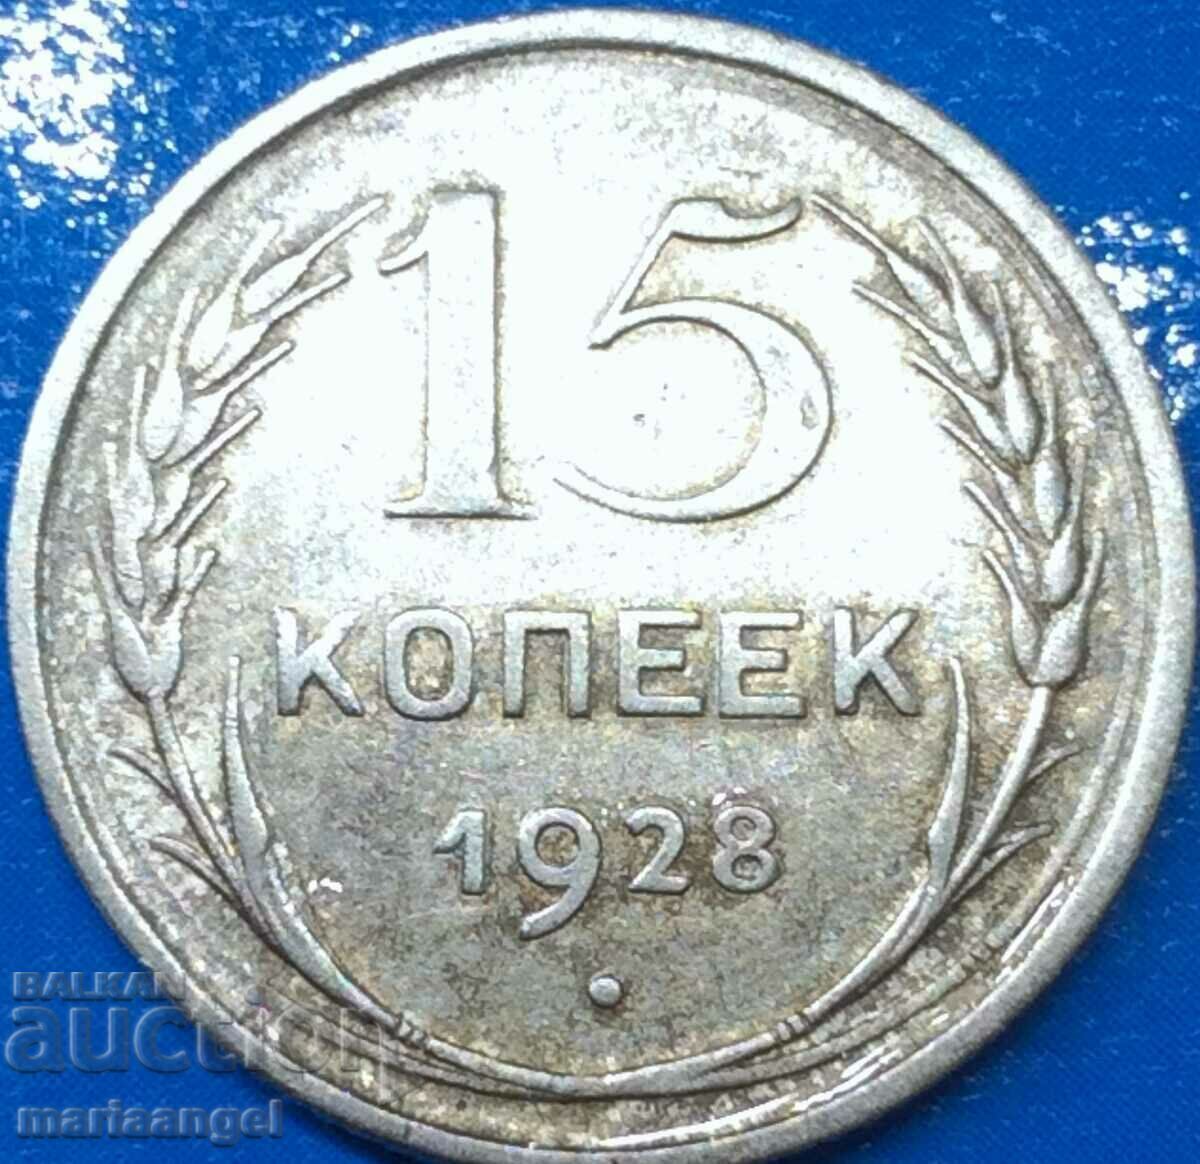 15 kopecks 1928 Russia USSR silver - quite rare